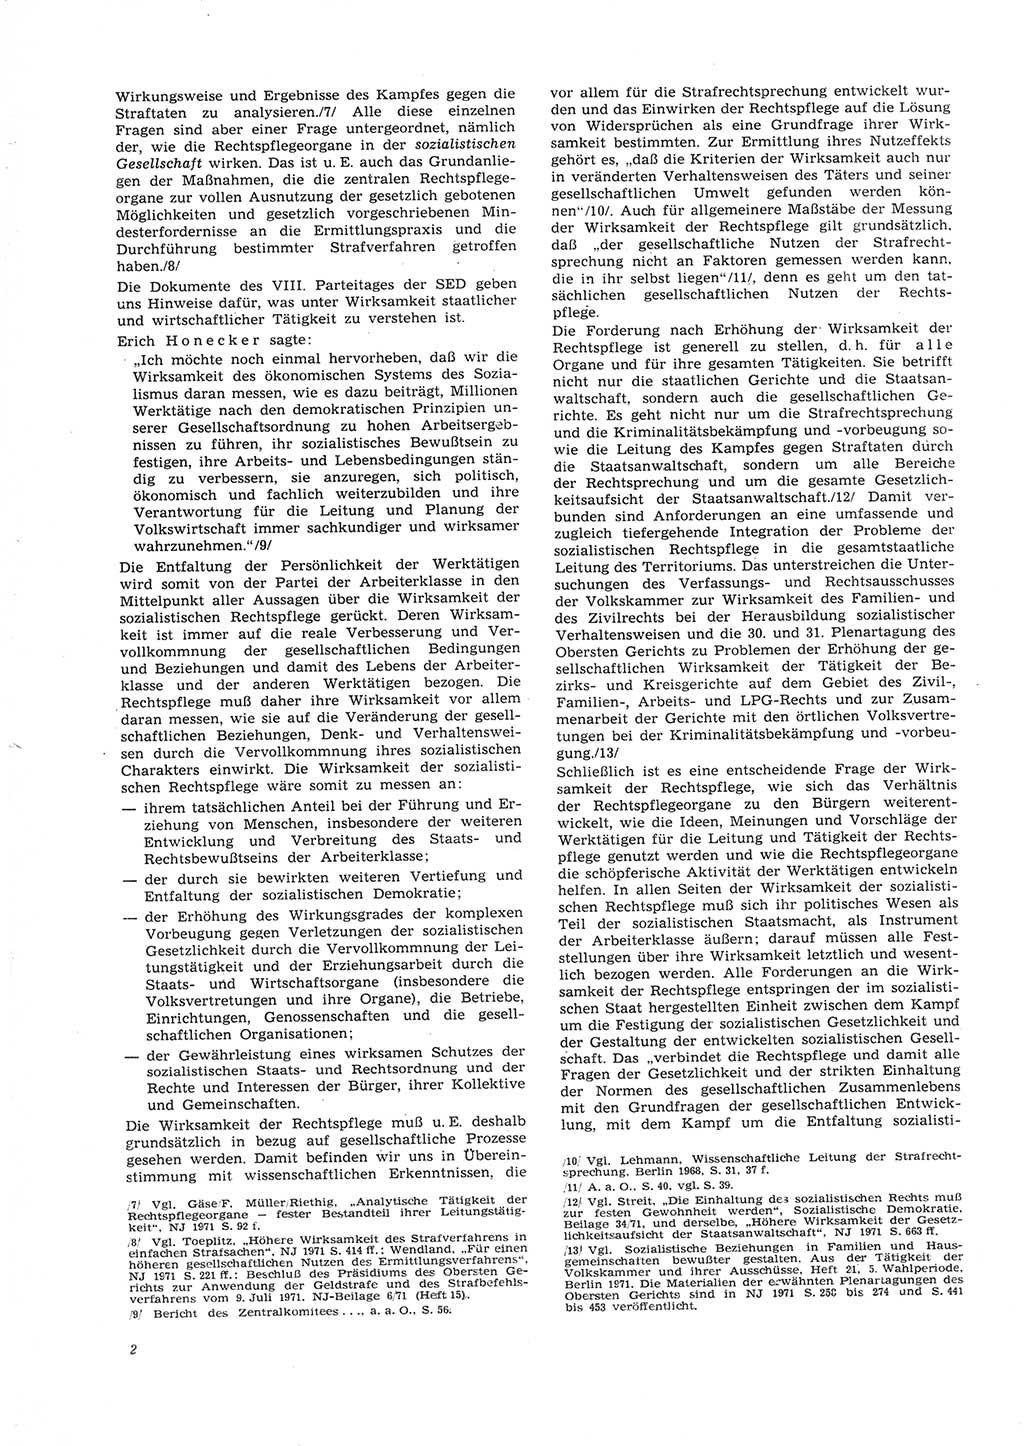 Neue Justiz (NJ), Zeitschrift für Recht und Rechtswissenschaft [Deutsche Demokratische Republik (DDR)], 26. Jahrgang 1972, Seite 2 (NJ DDR 1972, S. 2)